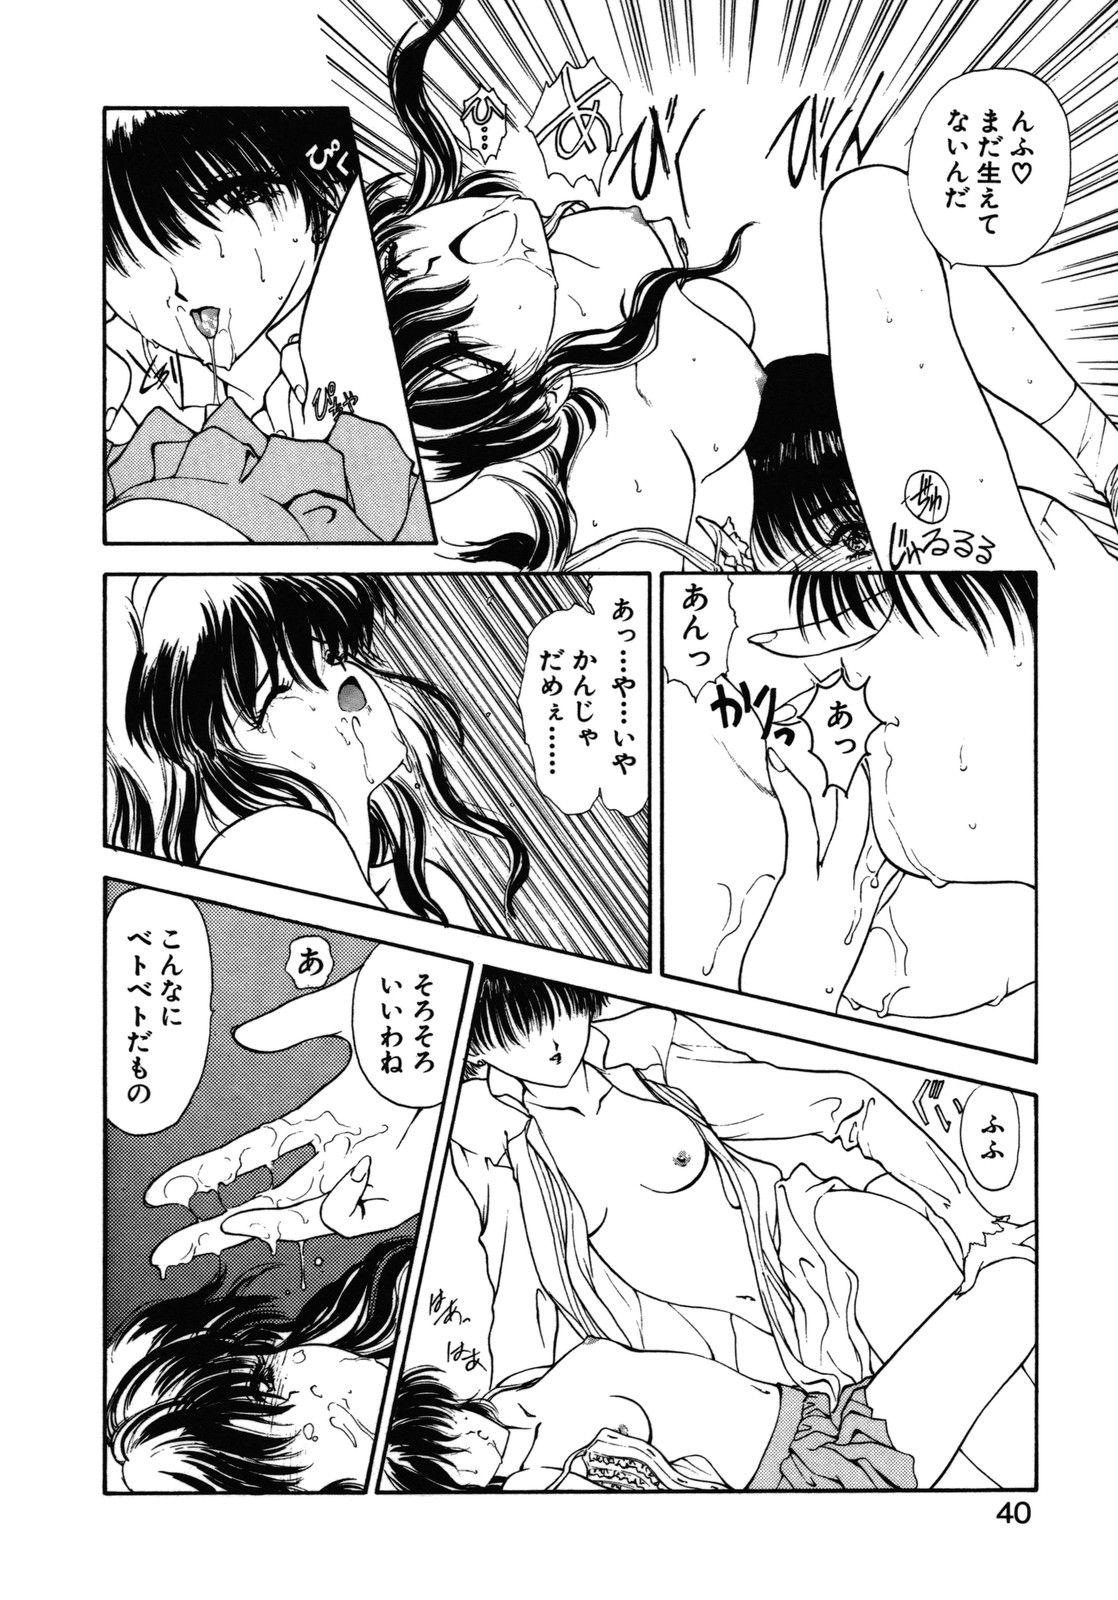 [Utatane Hiroyuki] COUNT DOWN page 41 full